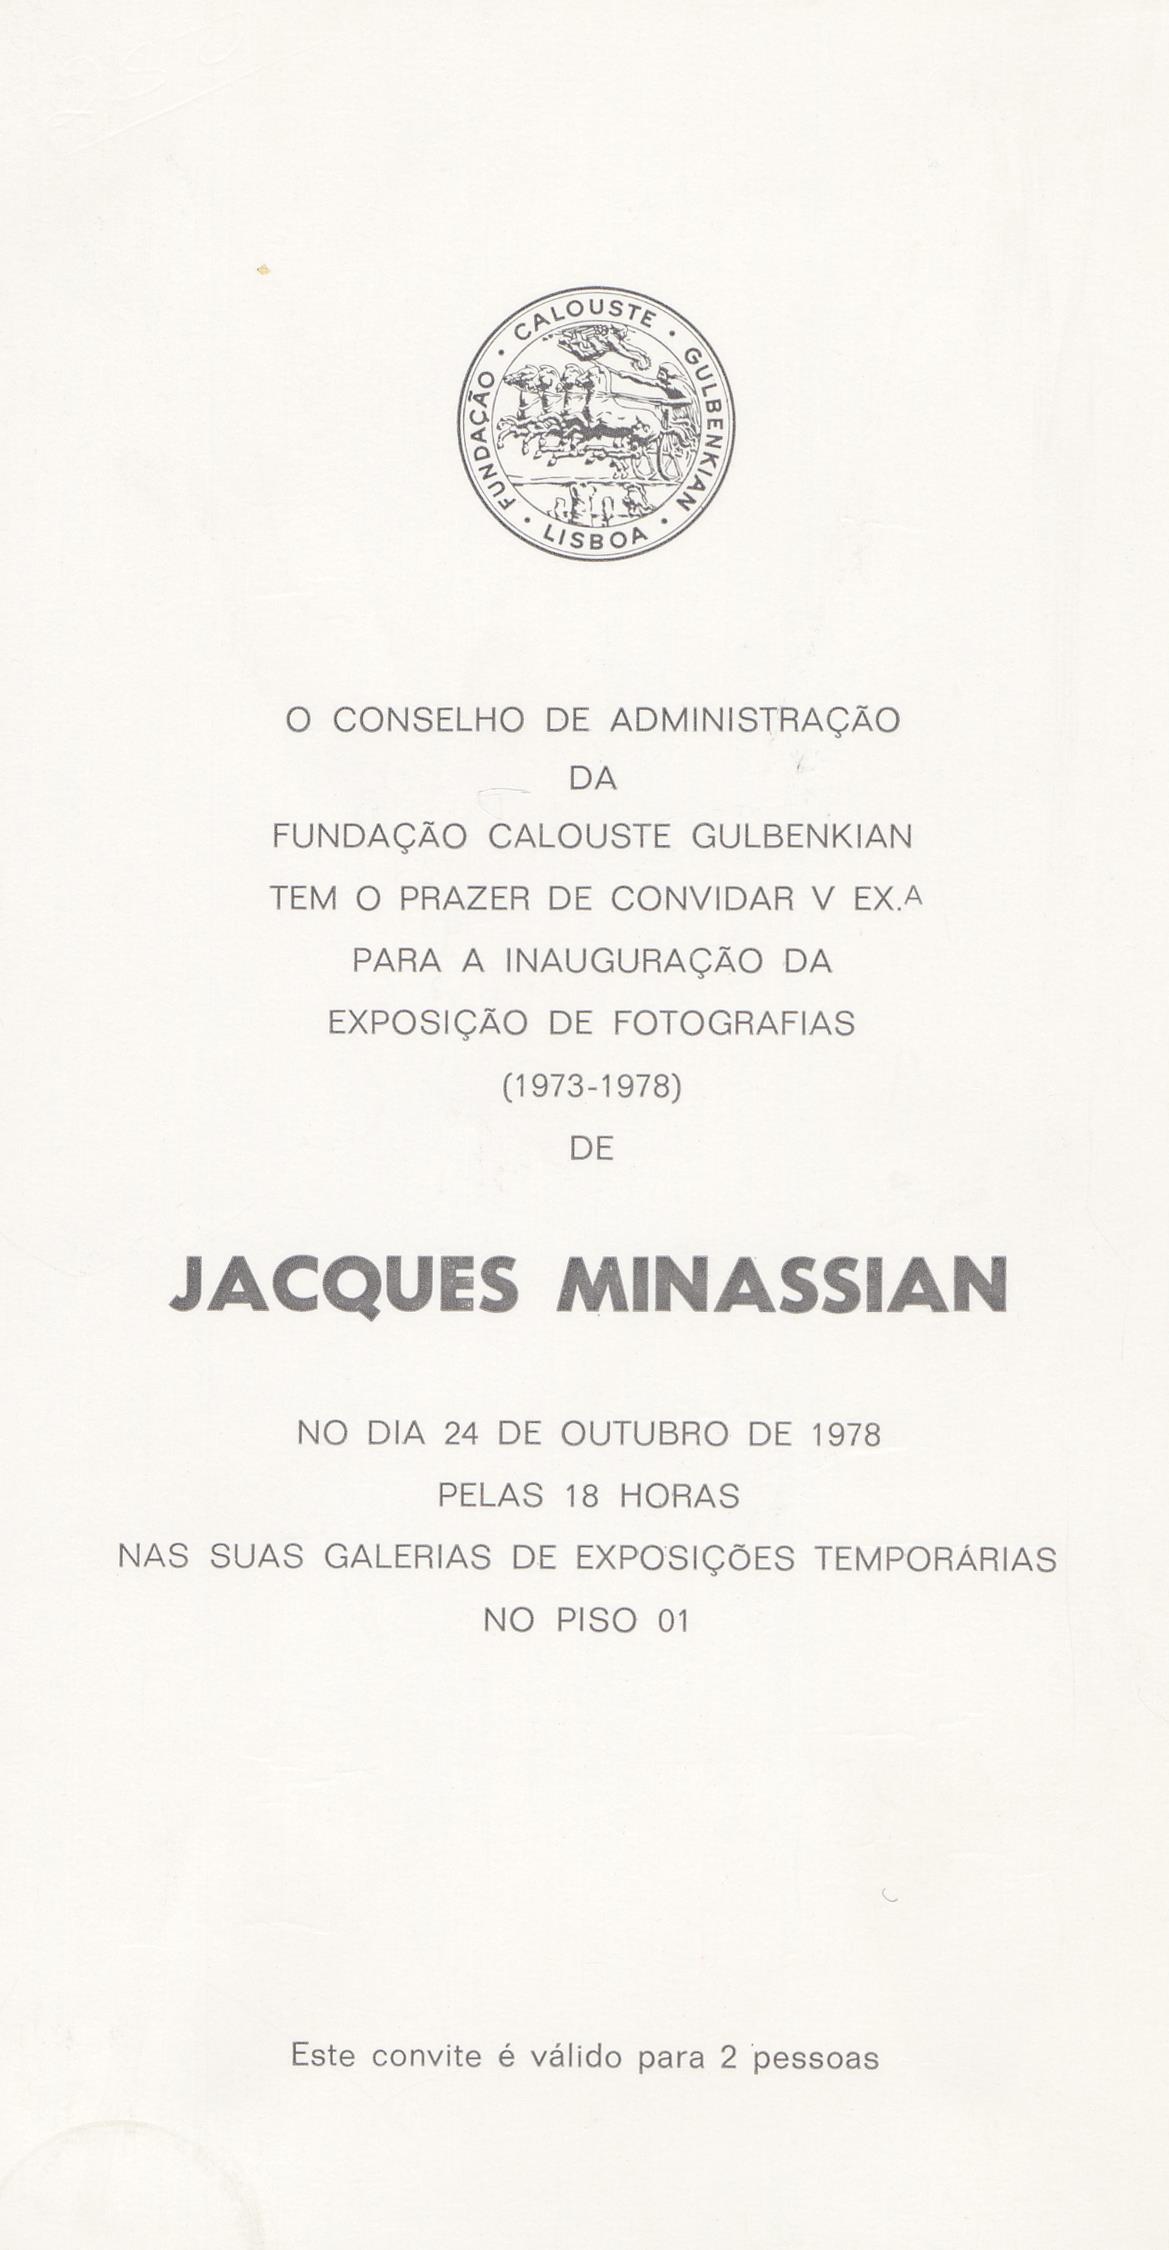 Jacques Minassian. Fotografias, 1973 – 1978